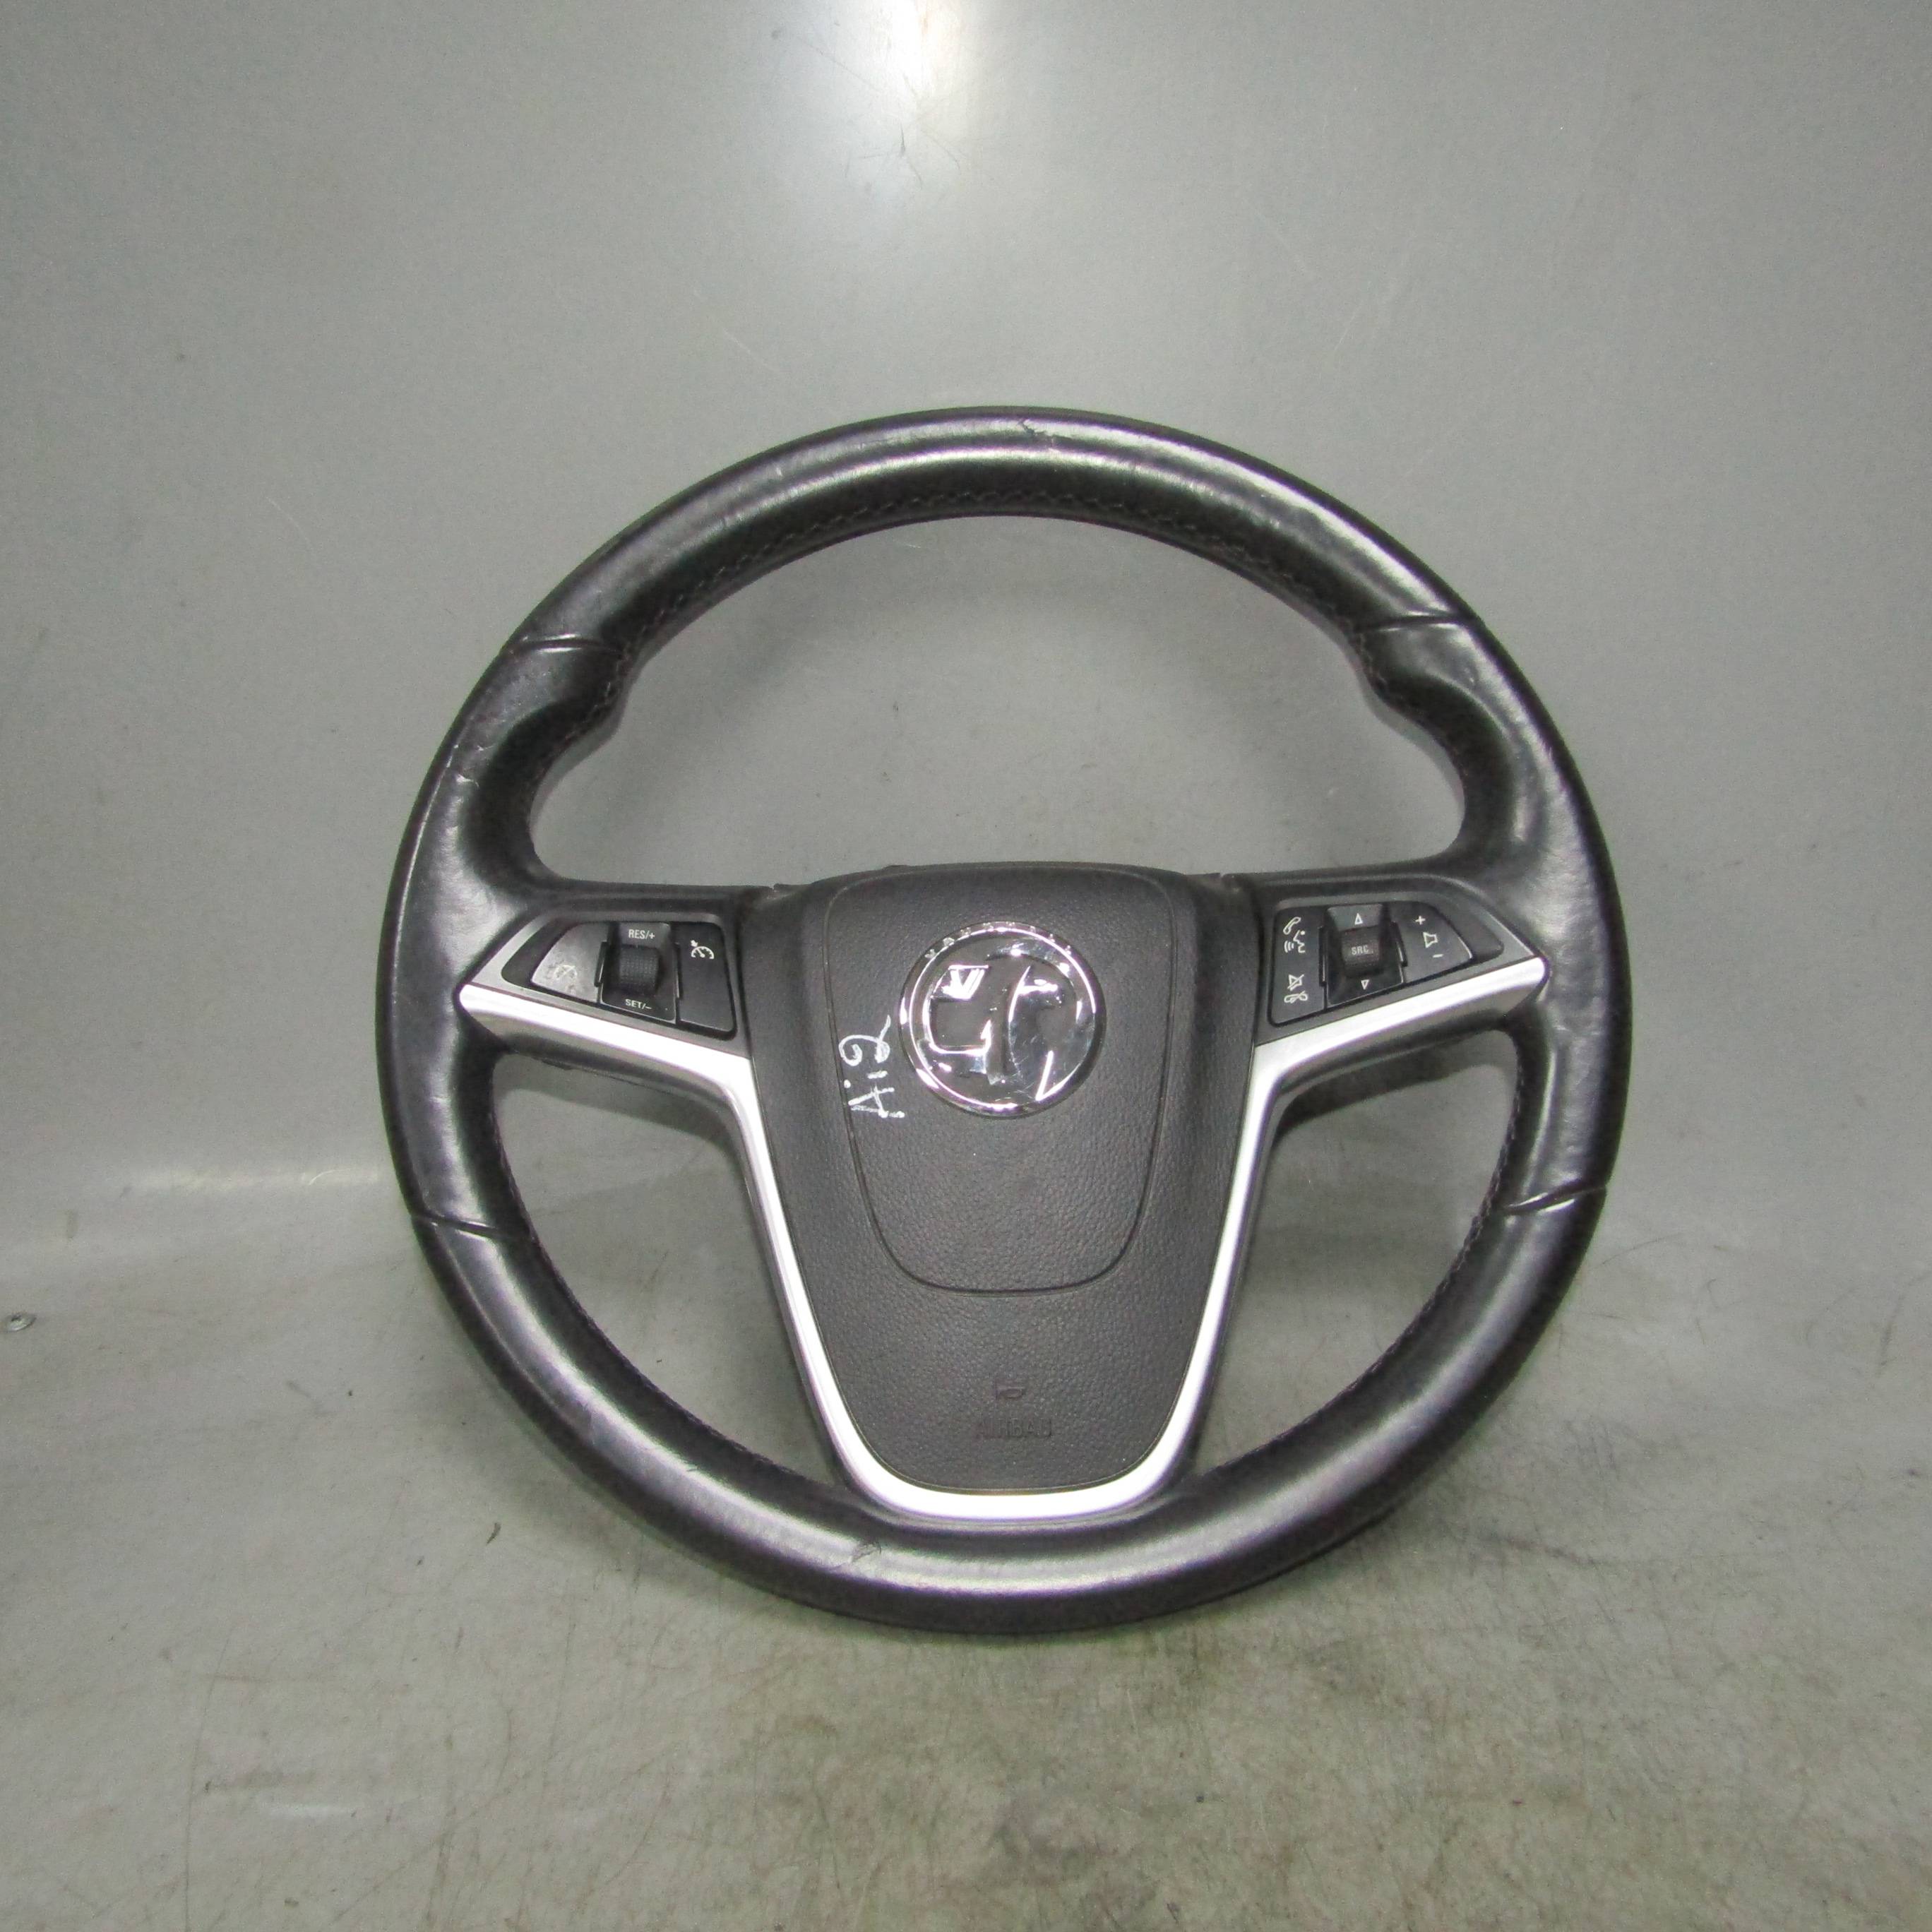 OPEL Insignia (2008-2012) для Рулевое колесо (Руль)